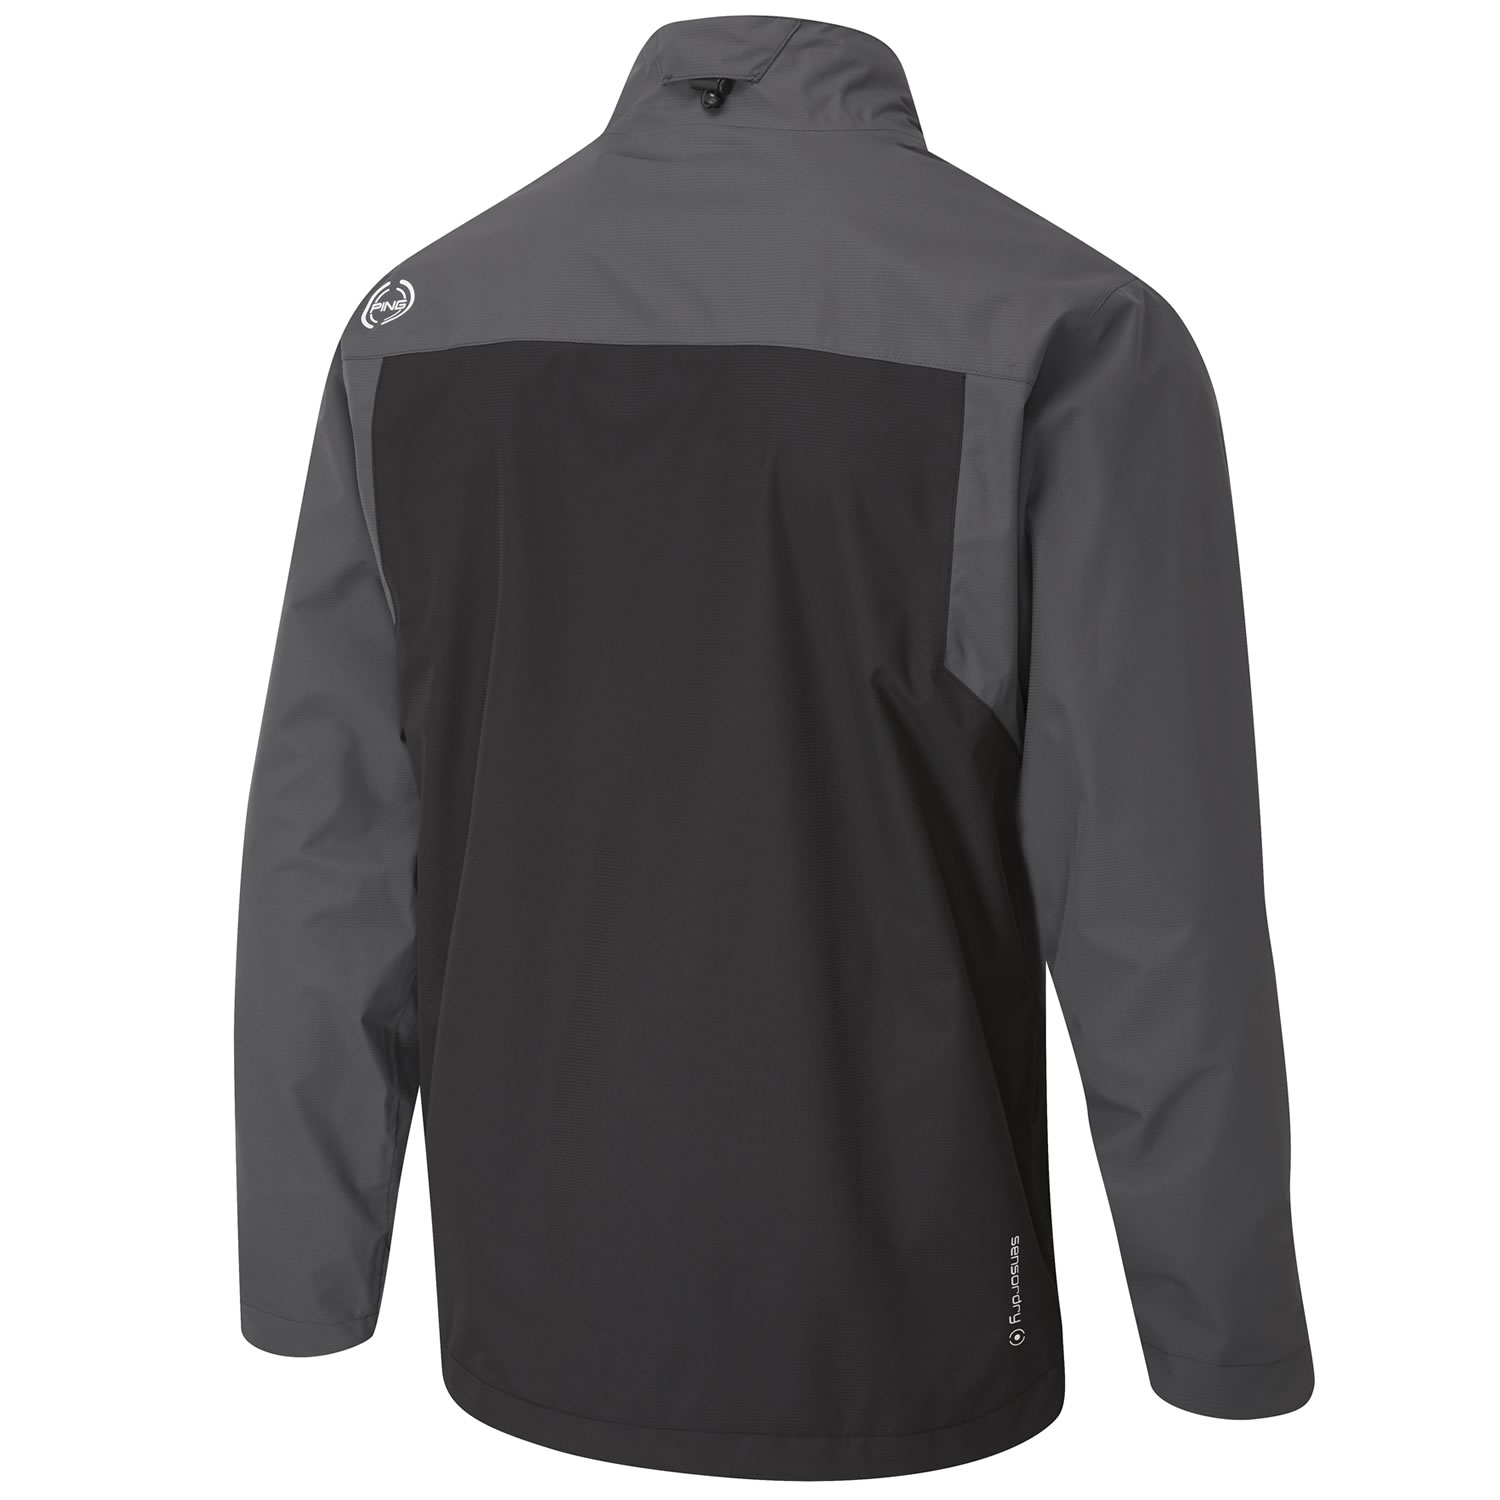 PING Sensordry Pro Waterproof Jacket Black/Asphalt | Scottsdale Golf